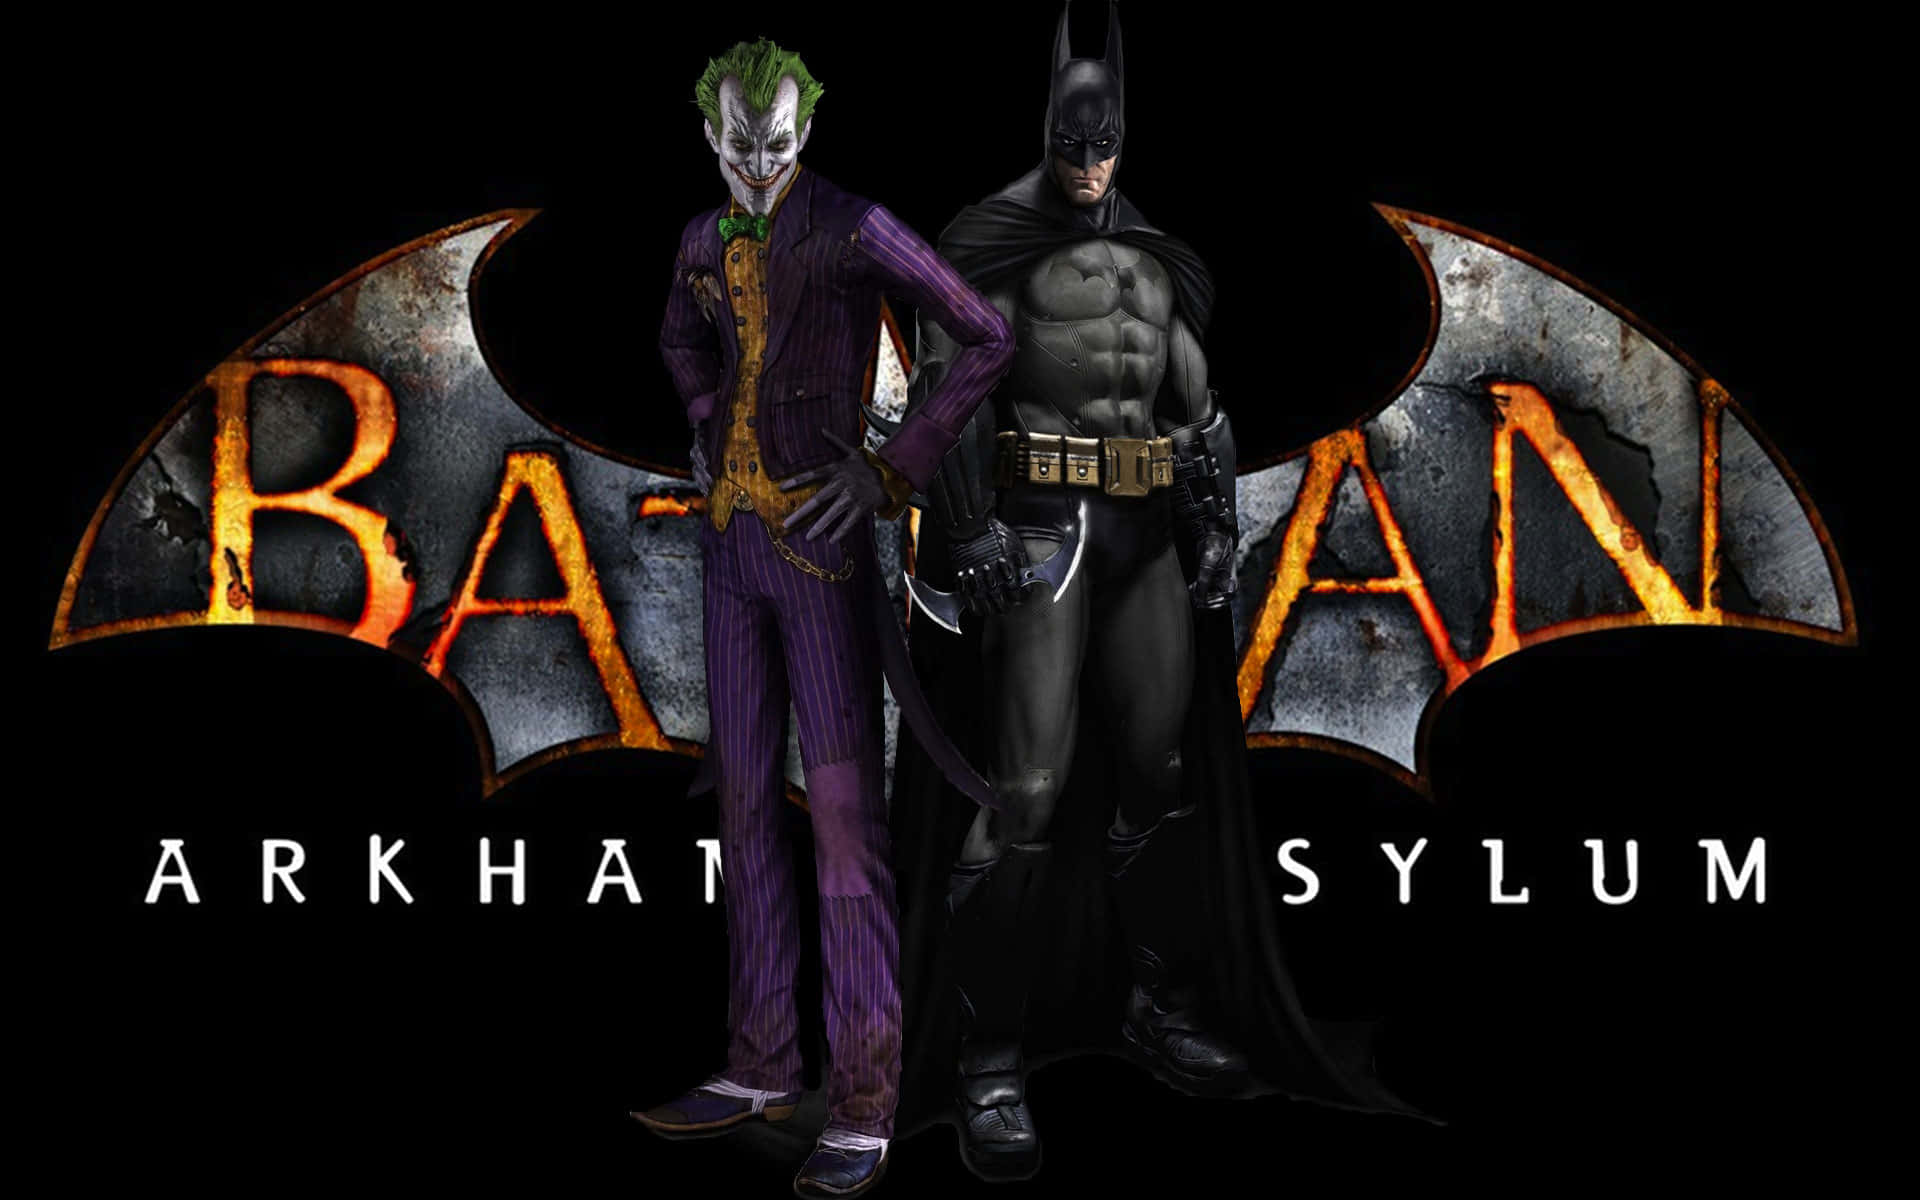 Бэтмен аркхам асайлум. Аркхам асайлум. Бэтмен Аркхем Asylum. Batman Arkham Asylum 2. Batman: Arkham Asylum (1).